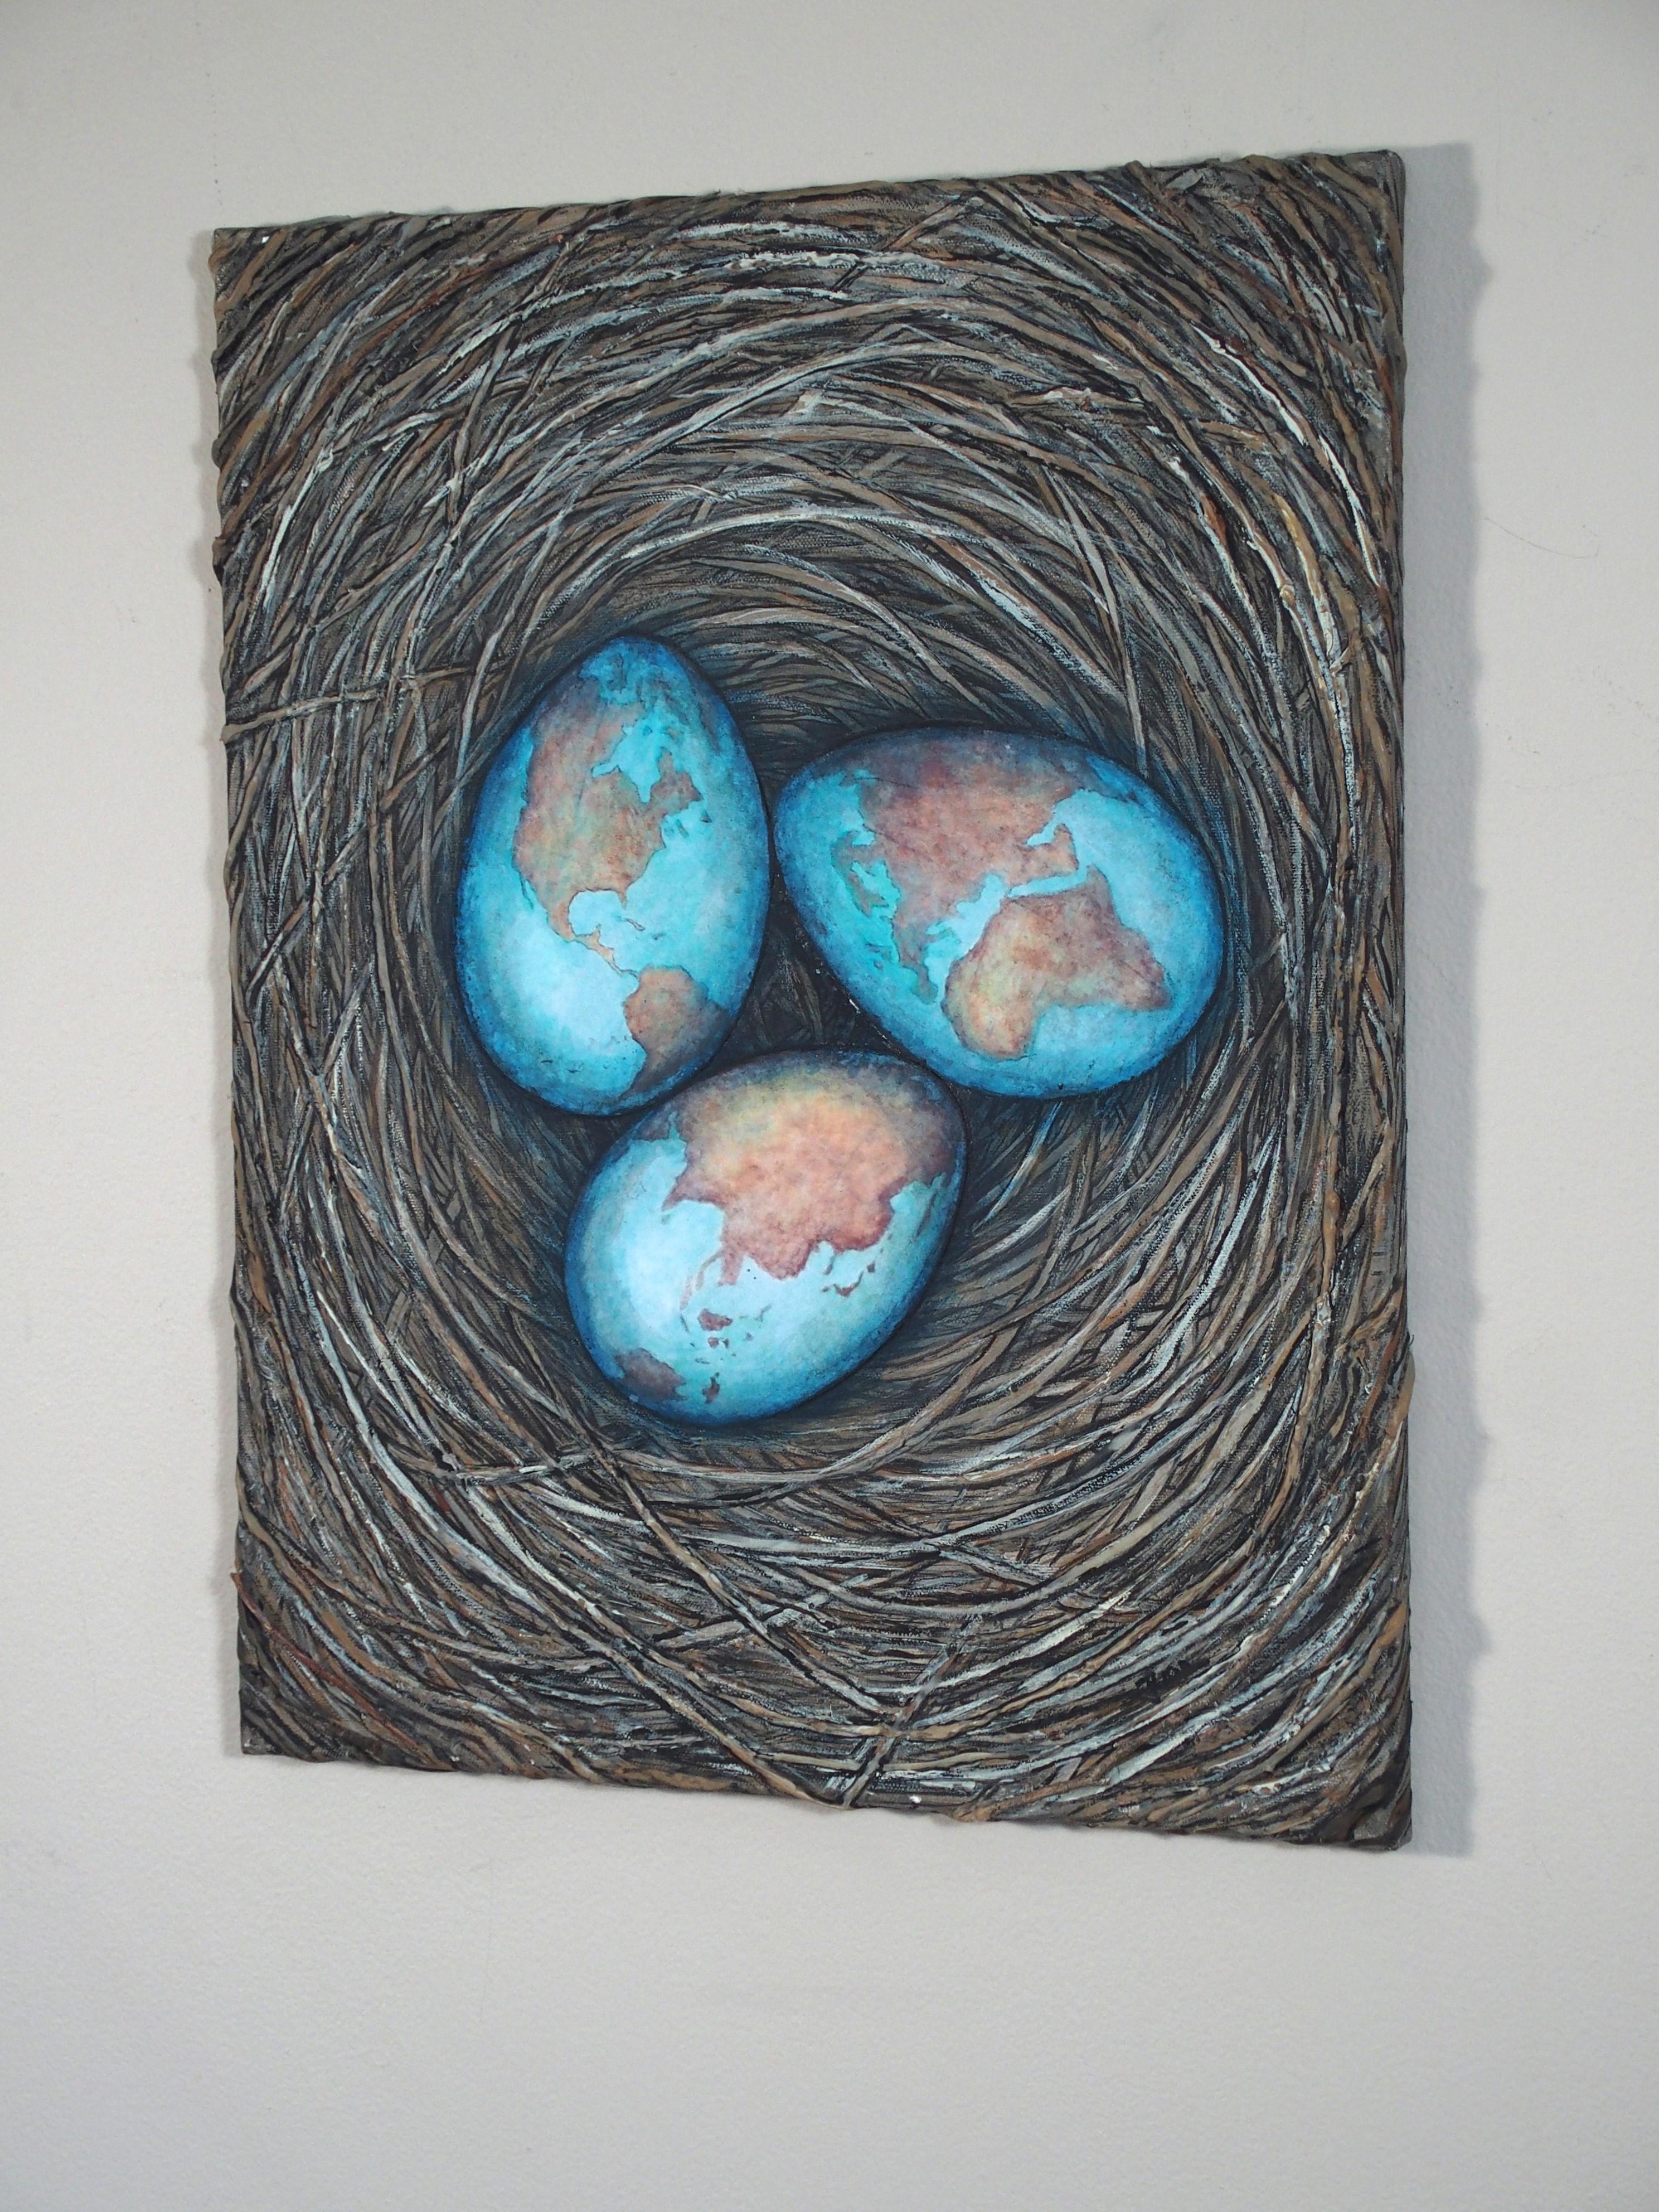 <p>Commentaires de l'artiste<br>La composition mêle des éléments de la nature et de la psychologie avec de la peinture et des brindilles formant un nid. Un collage de cartes géographiques peintes à la main décore la surface des œufs. Il se penche